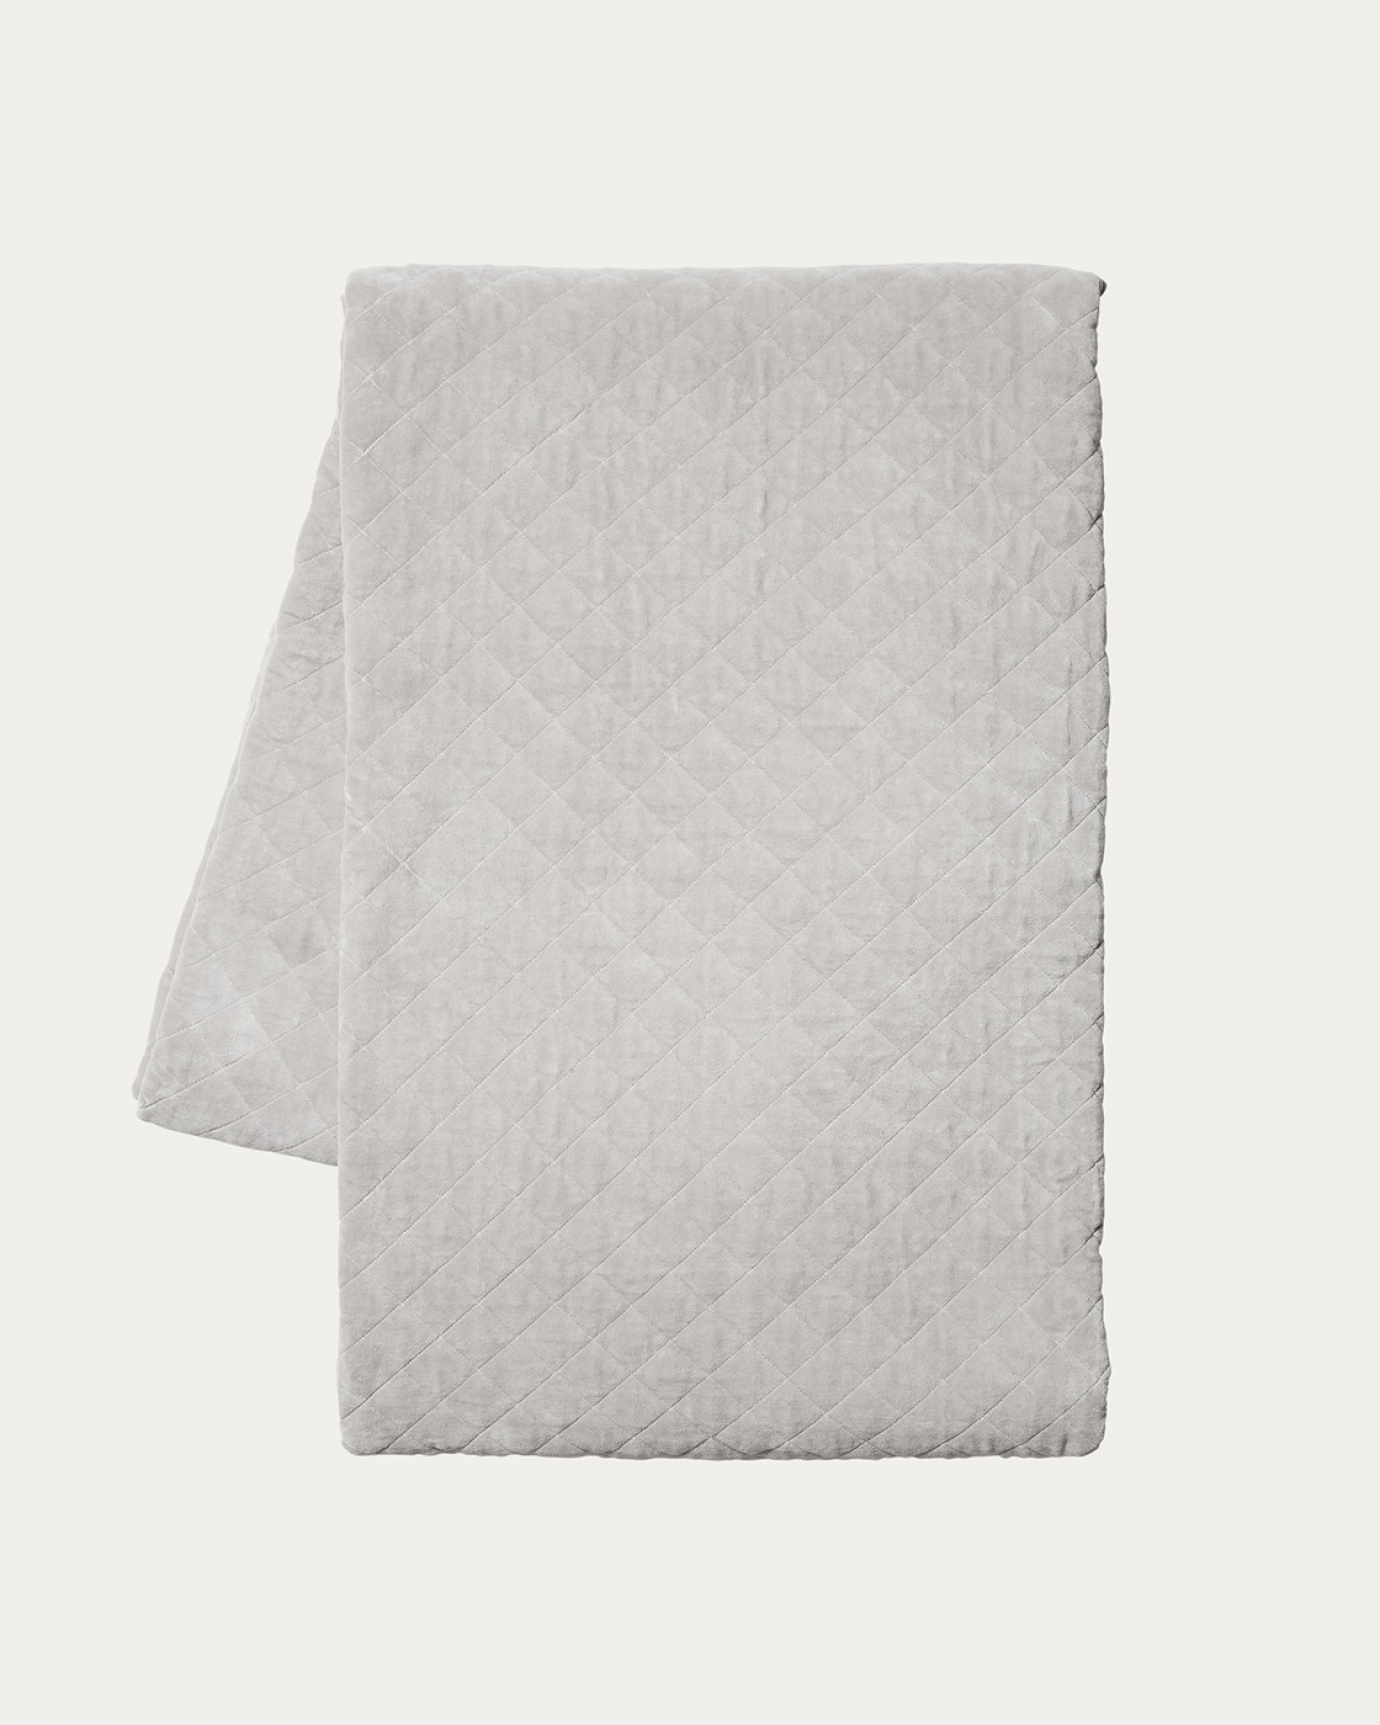 Produktbild silber-grau Tagesdecke PICCOLO aus weichem Samt aus bio-baumwolle für Einzelbett von LINUM DESIGN. Größe 170x260 cm.